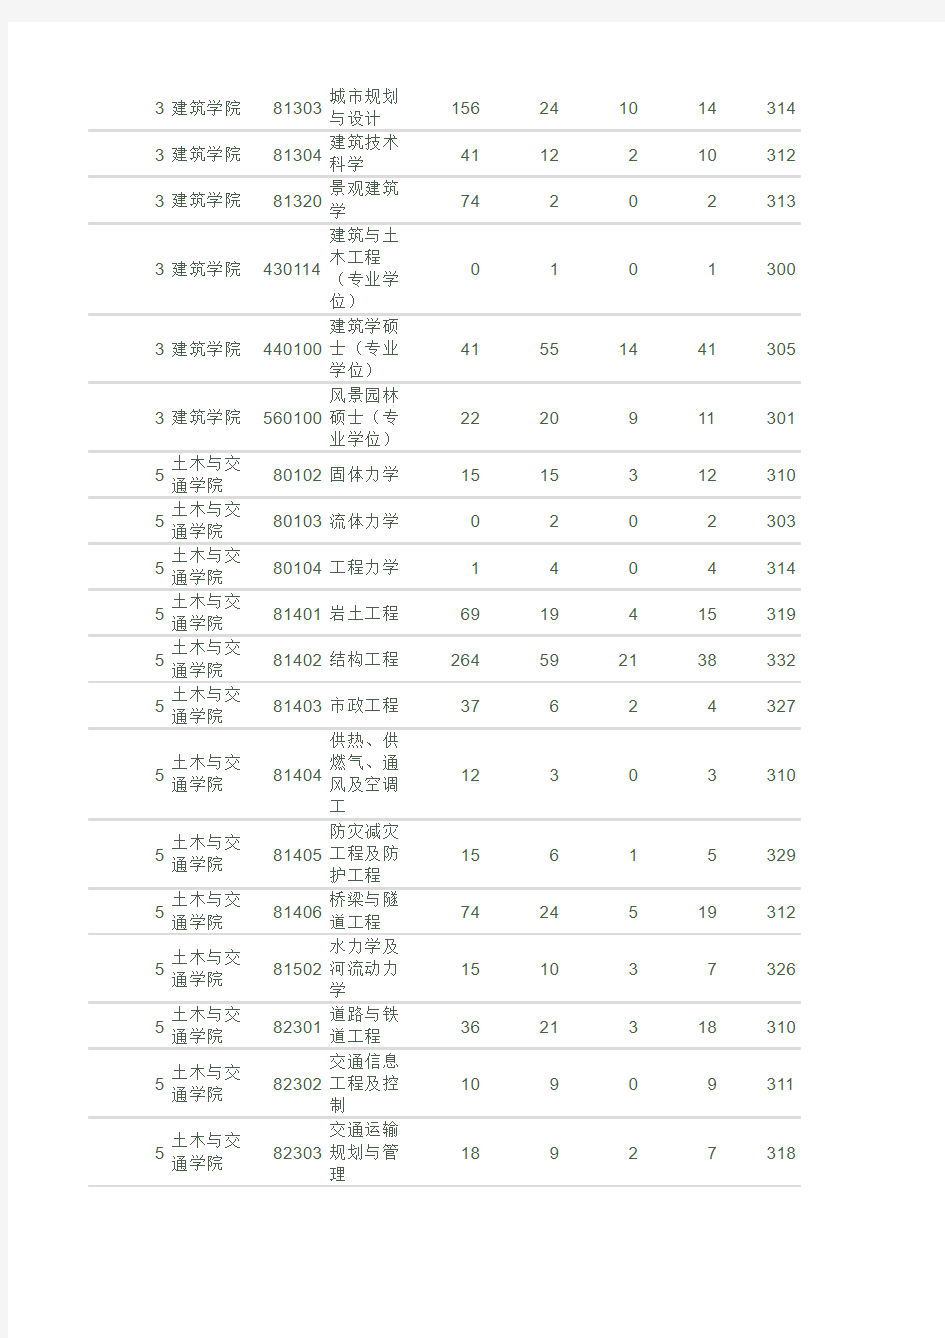 华南理工大学2010年硕士研究生报名录取情况统计